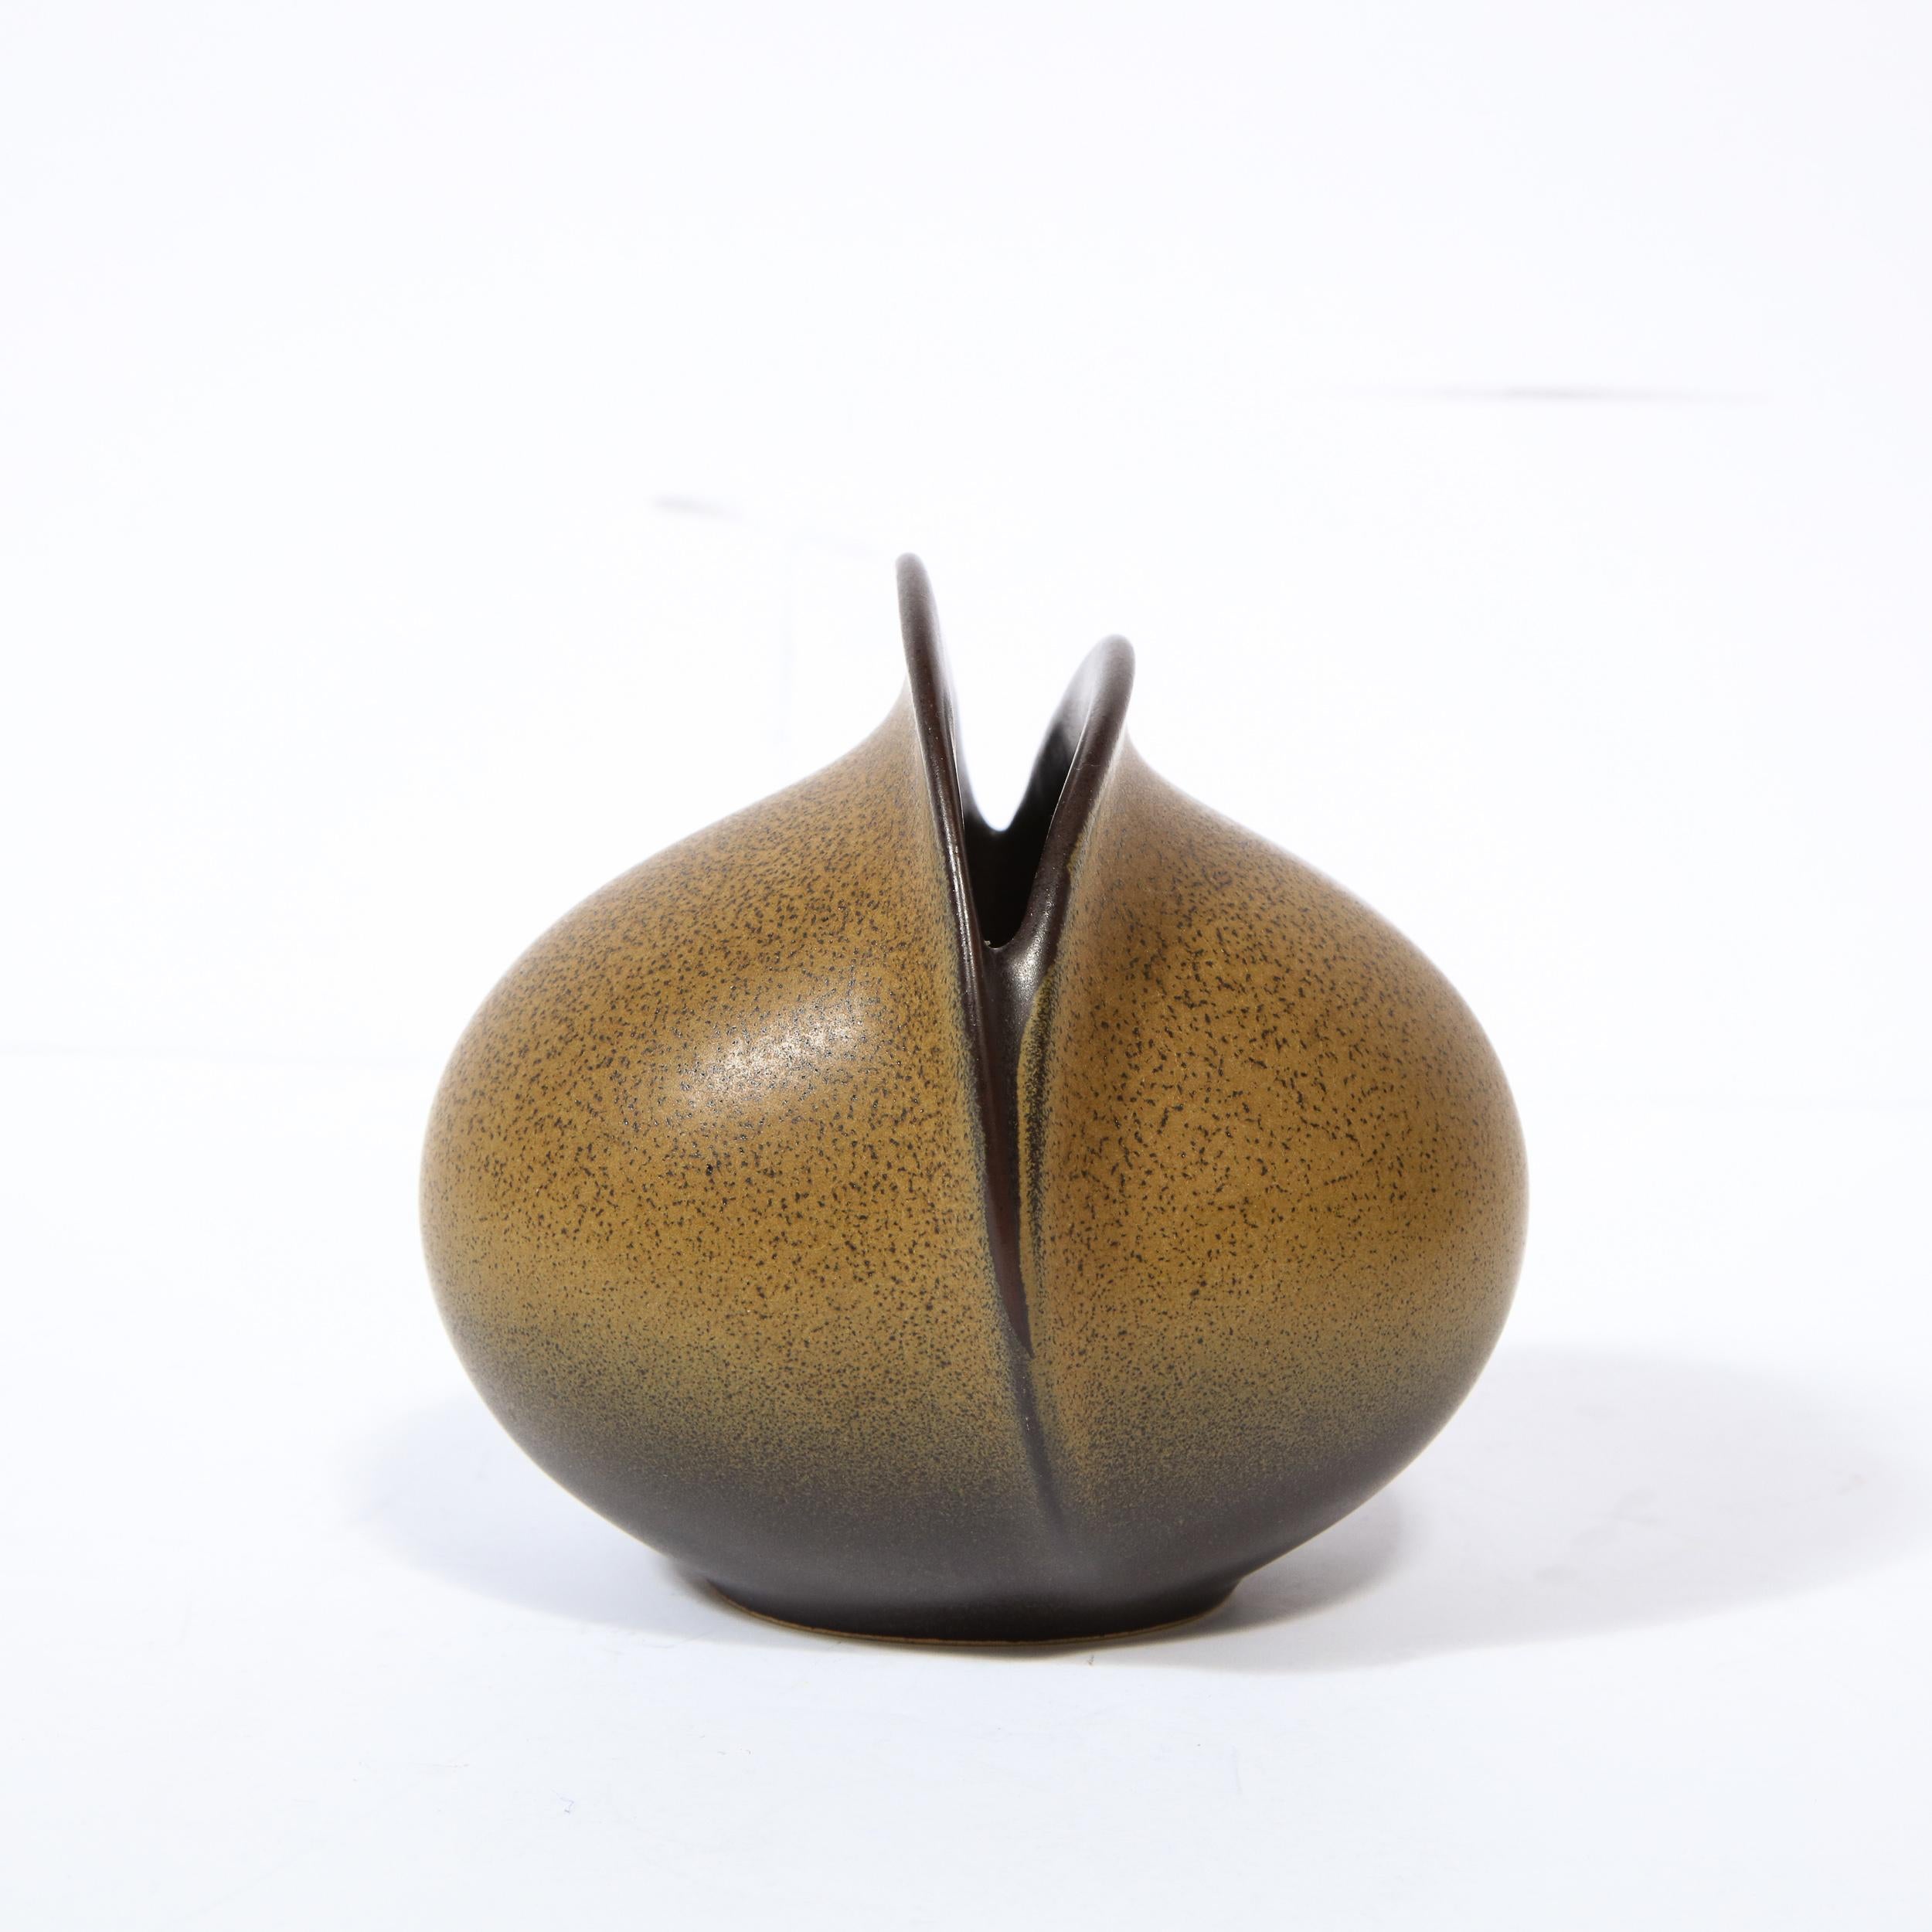 Diese raffinierte und skulpturale Vase wurde um 1960 in Deutschland von dem geschätzten Hersteller Rosenthal entworfen. Sie hat eine kugelförmige Form mit einem eiförmigen Schlitz. Das Äußere des Stücks ist gelbbraun mit bernsteinfarbenen